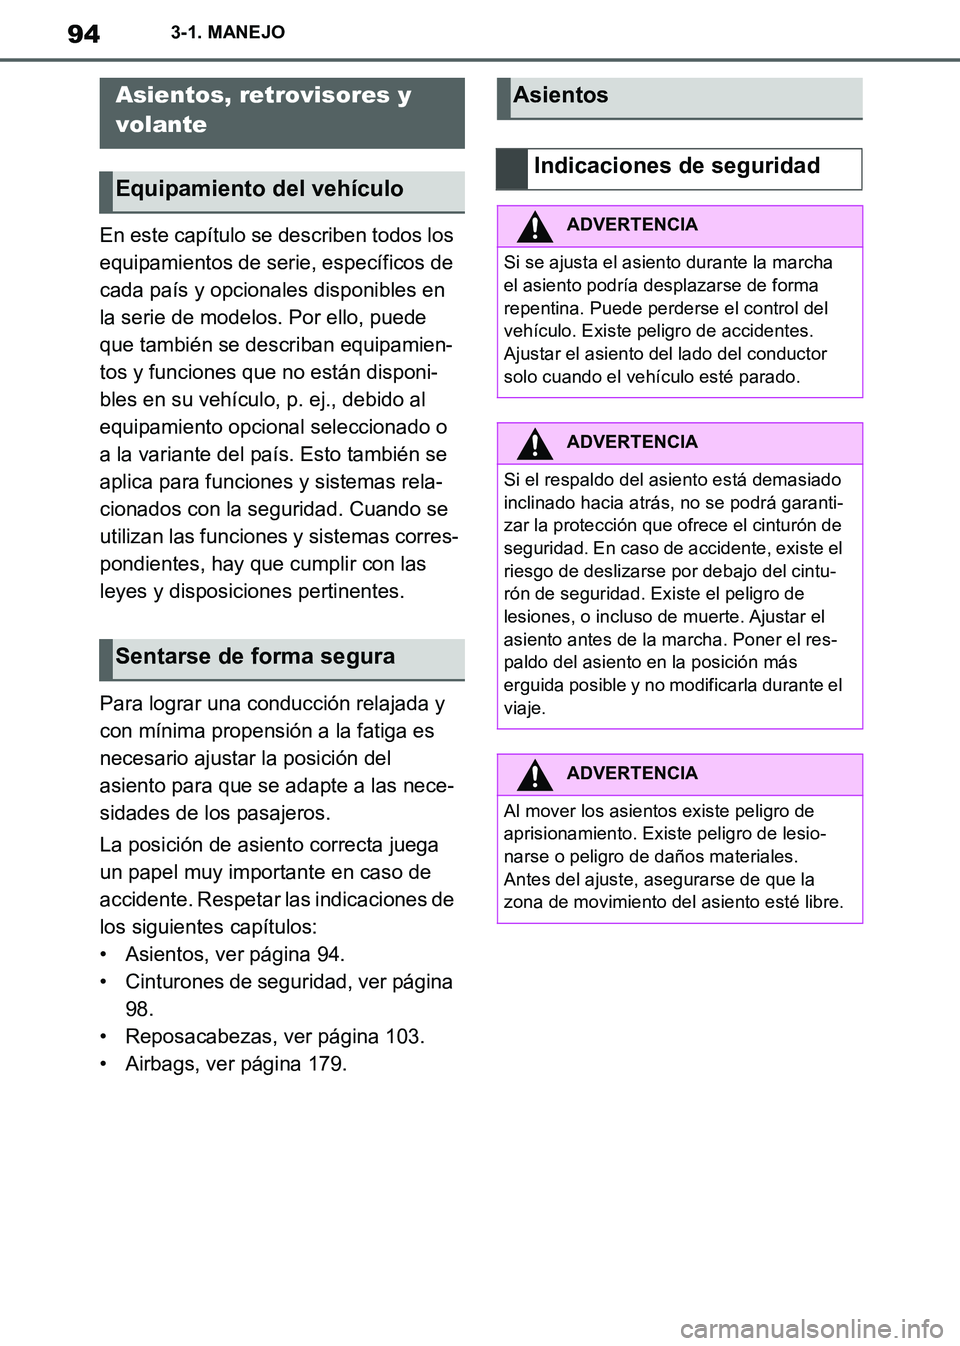 TOYOTA SUPRA 2019  Manuale de Empleo (in Spanish) 94
Supra Owners Manual_ES
3-1. MANEJO
En este capítulo se describen todos los 
equipamientos de serie, específicos de 
cada país y opcionales disponibles en 
la serie de modelos. Por ello, puede 
